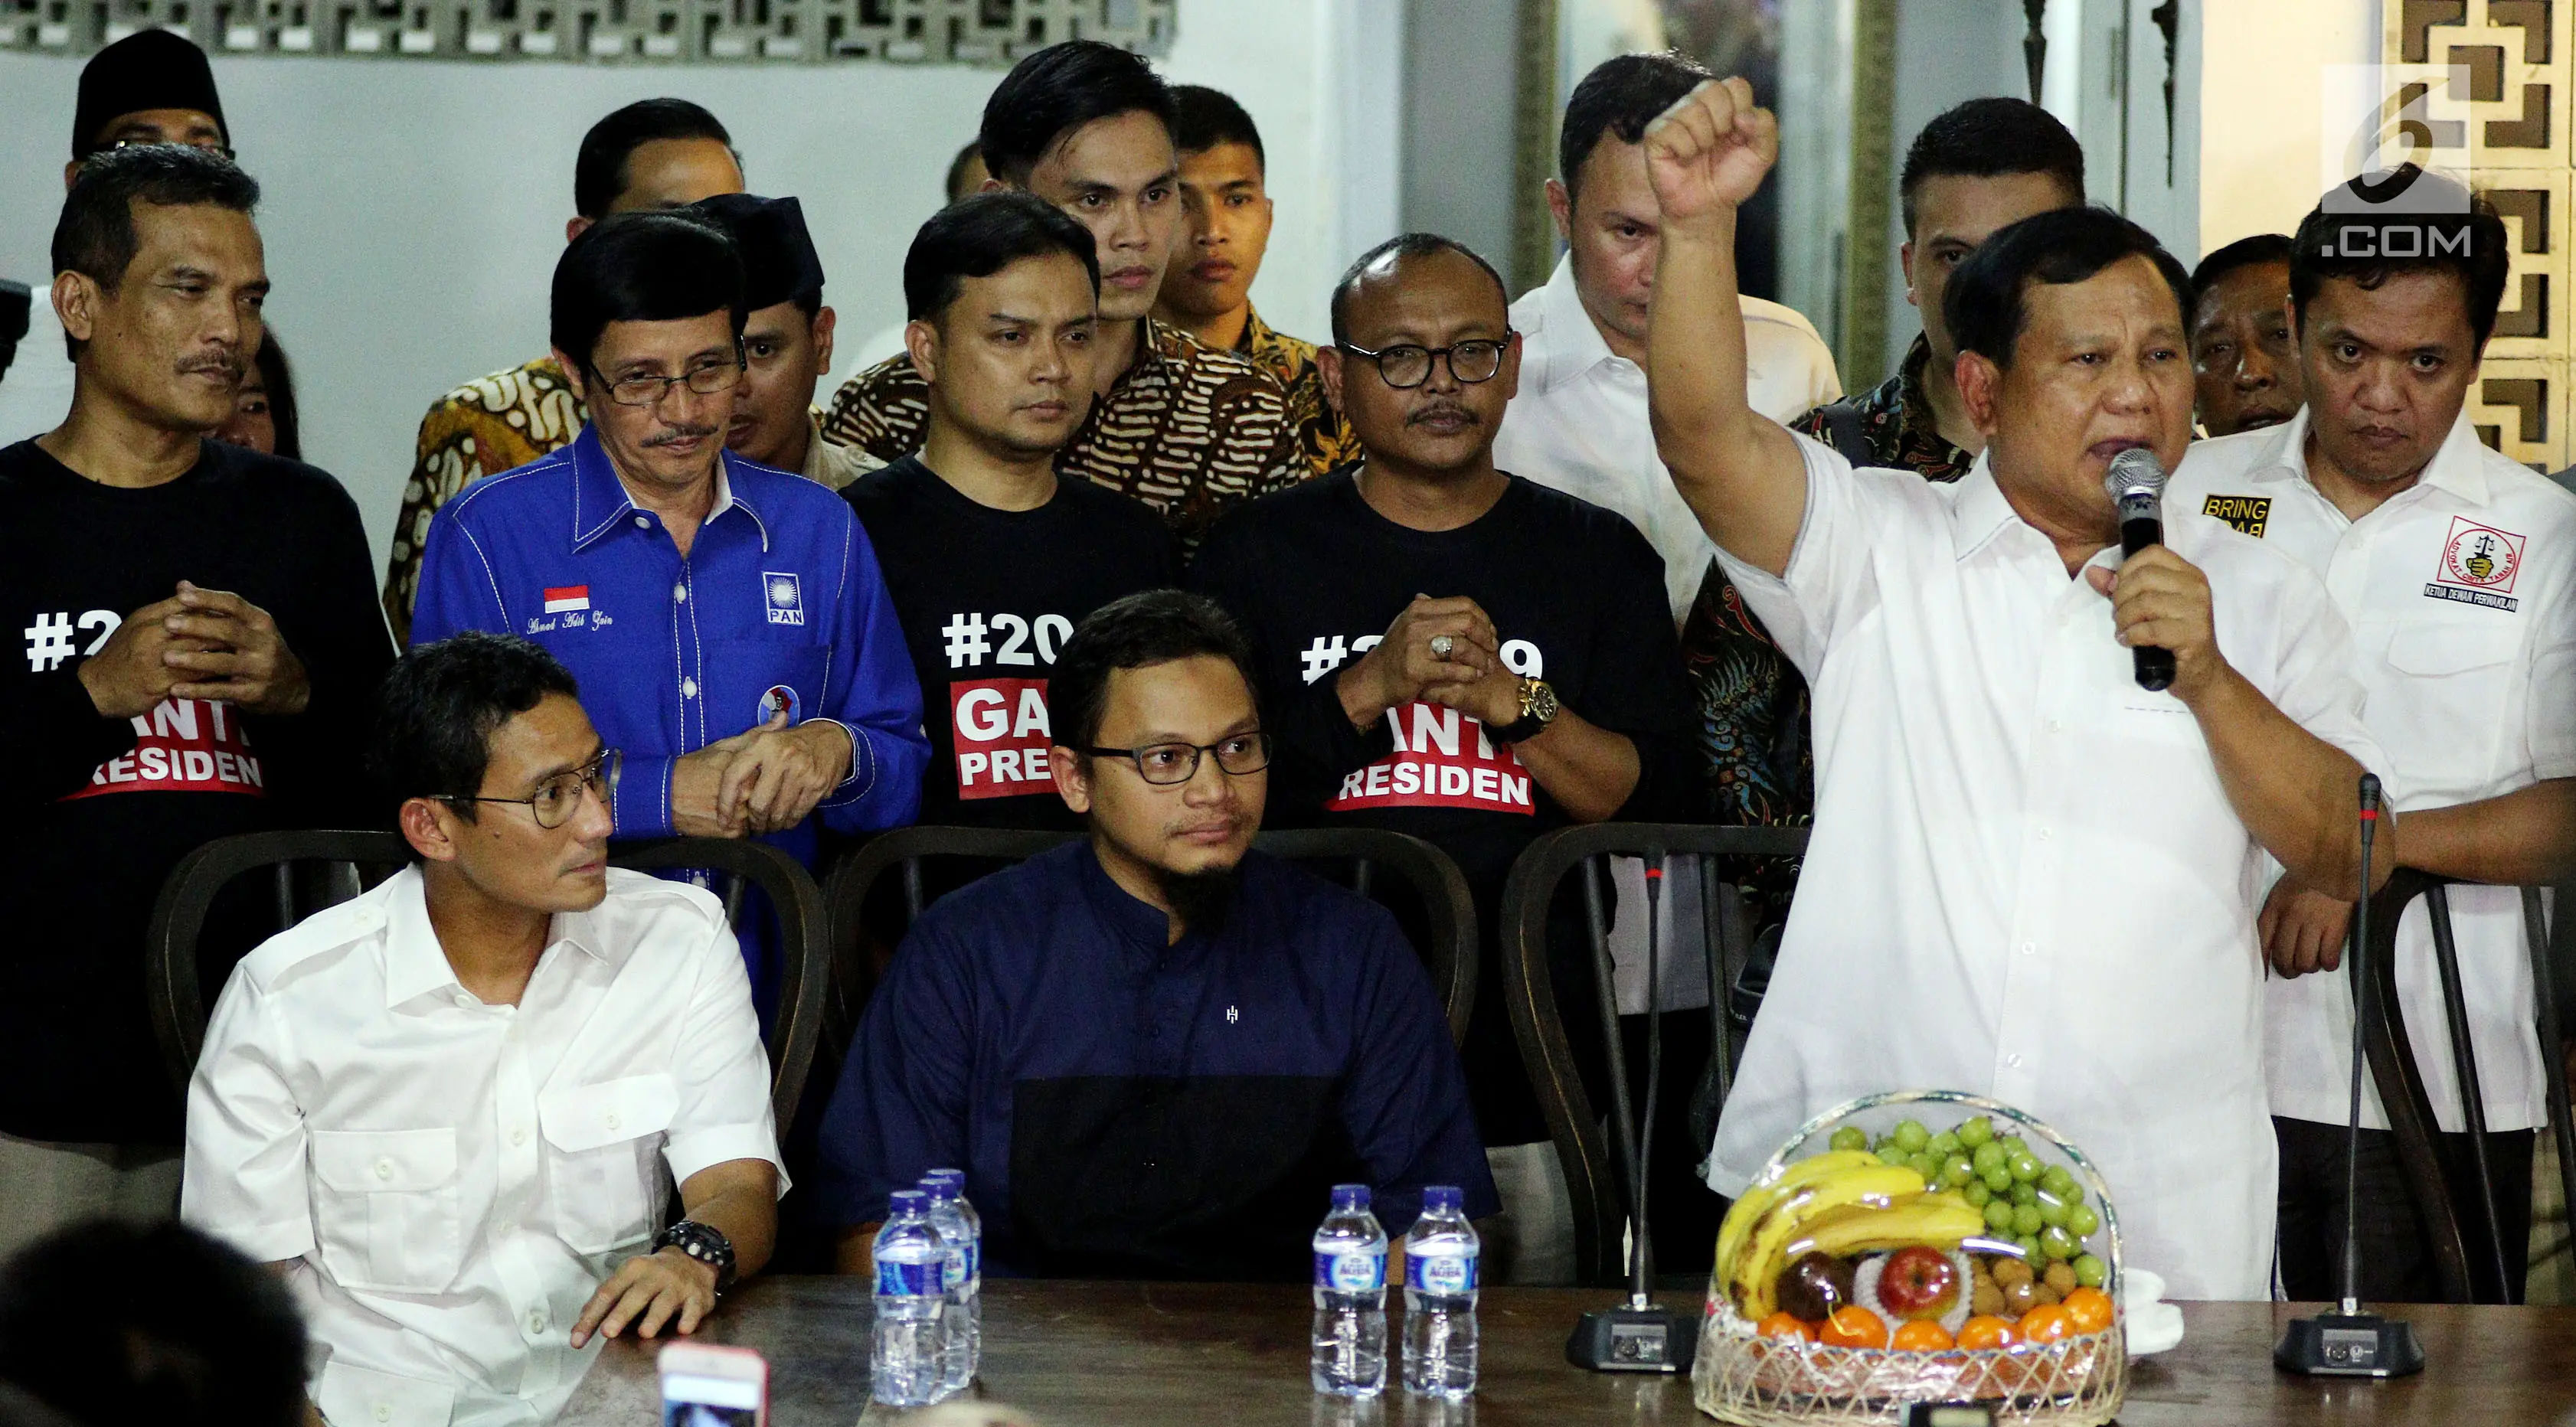 Ketua Umum Partai Gerindra Prabowo Subianto memberi sambutan saat peresmian sekretariat bersama Partai Gerindra - PKS dan PAN di Jakarta, Jumat (27/4). Acara ini juga dihadiri oleh Wakil Gubernur Sandiaga Uno. (Liputan6.com/JohanTallo)